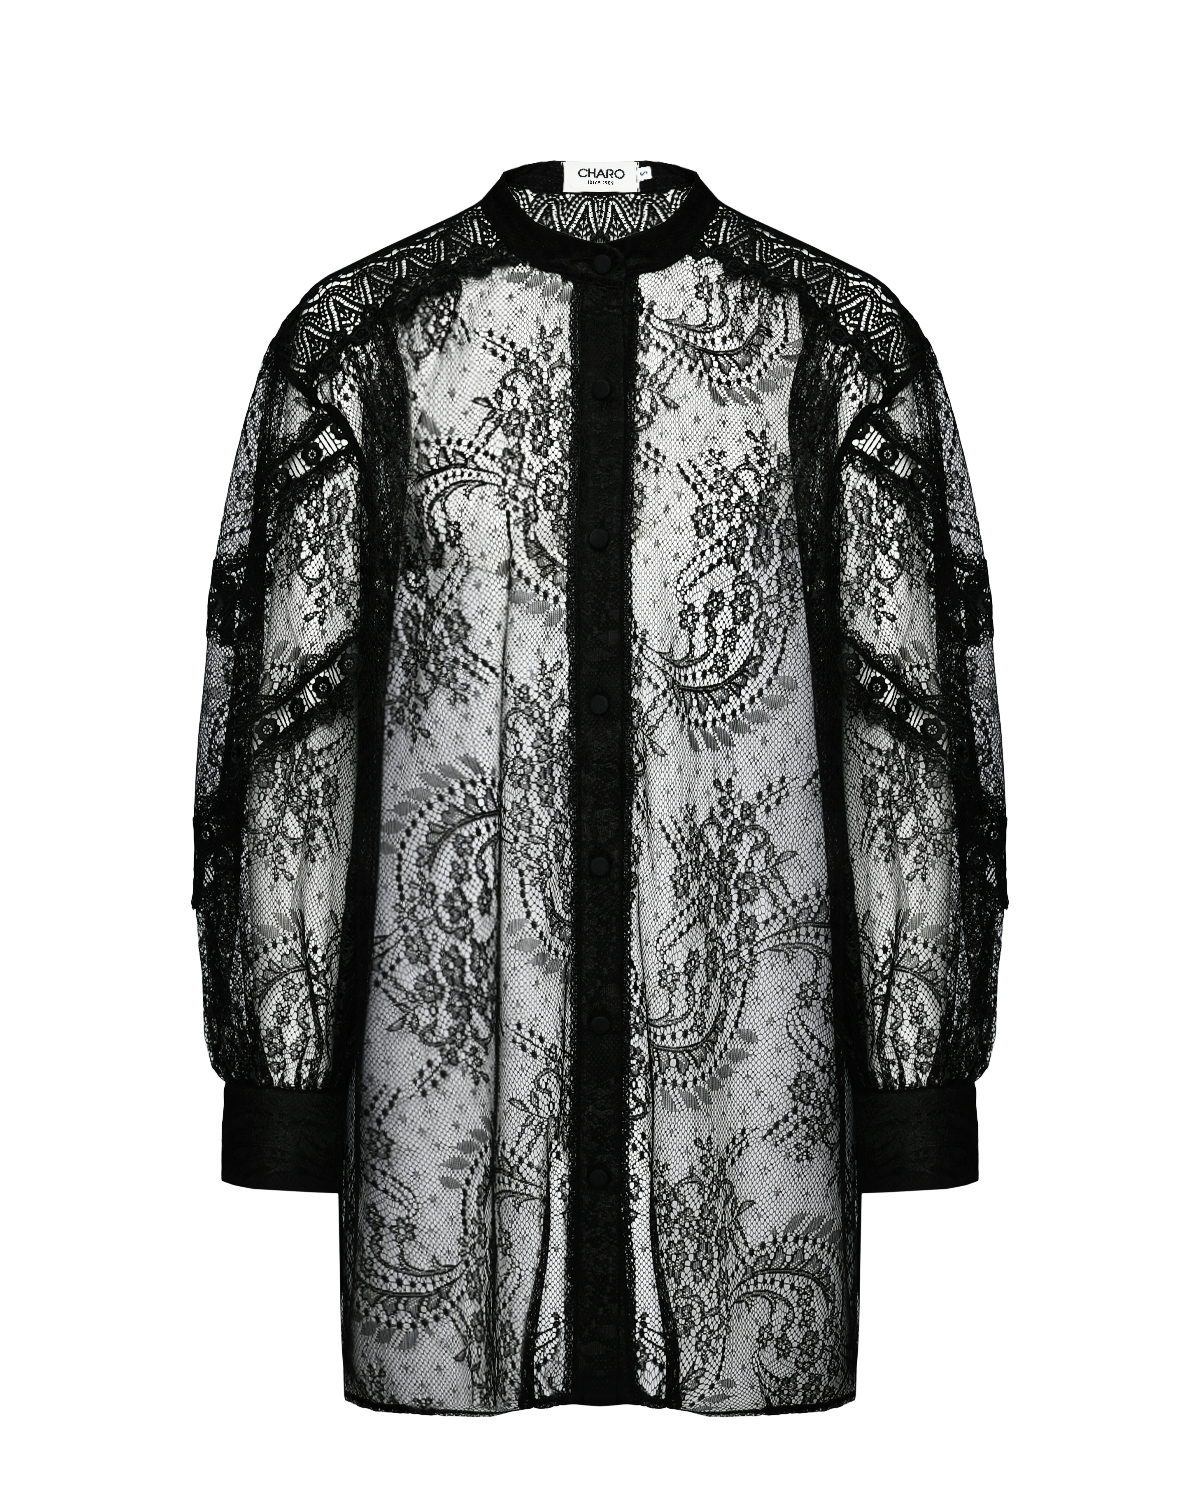 Гипюровая блузка, черная Charo Ruiz, размер 40, цвет нет цвета - фото 1